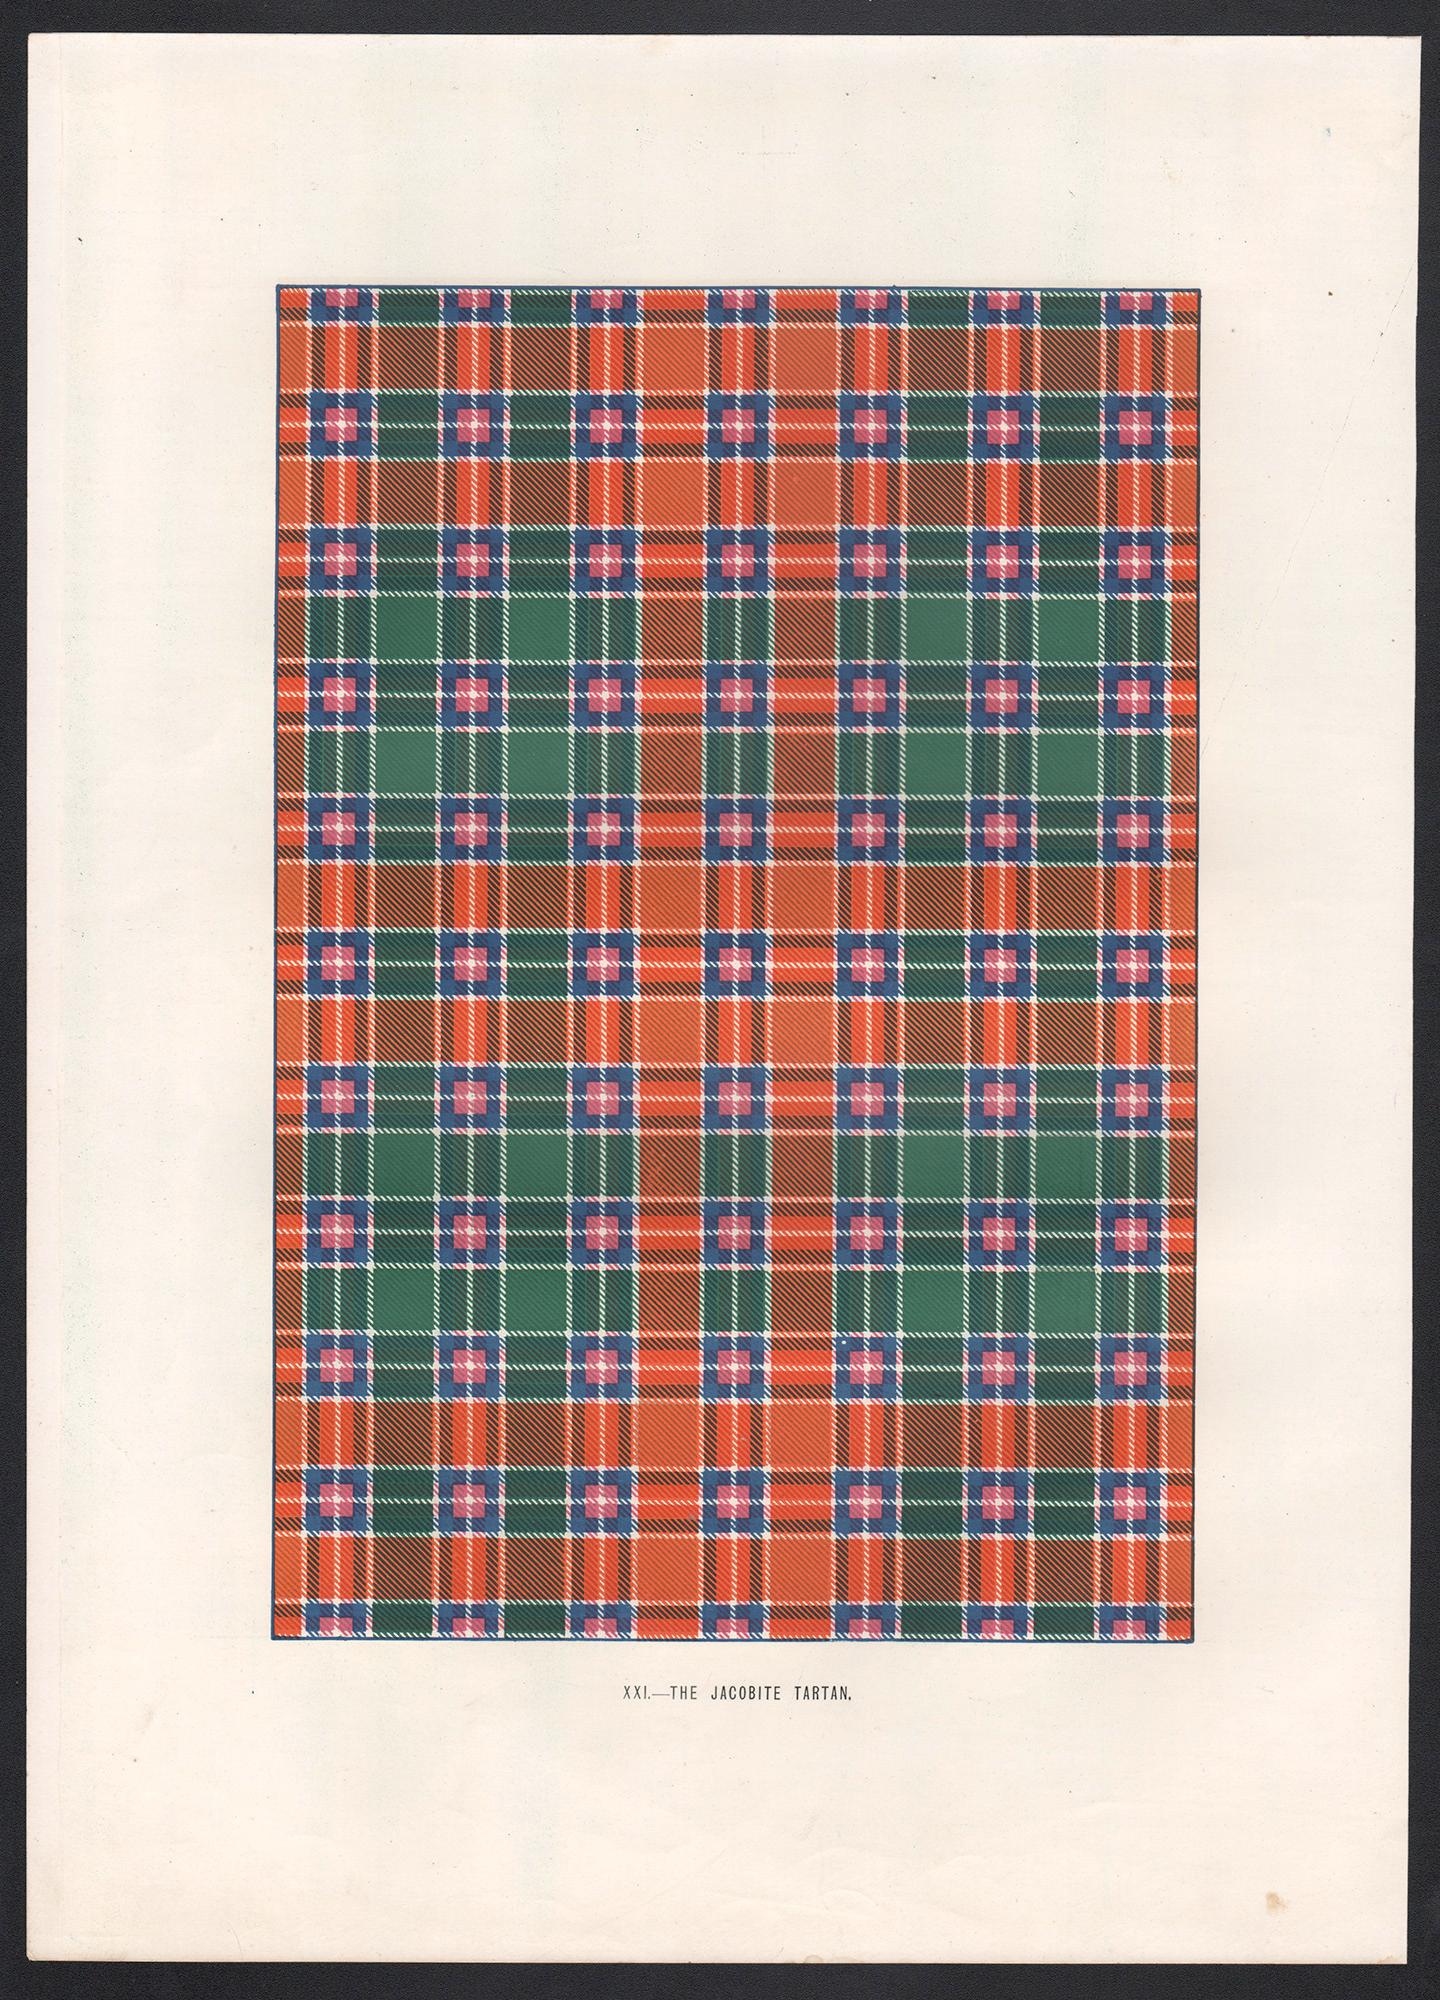 Impression lithographique The Jacobite Tartan, Écosse écossaise d'art - Print de Unknown